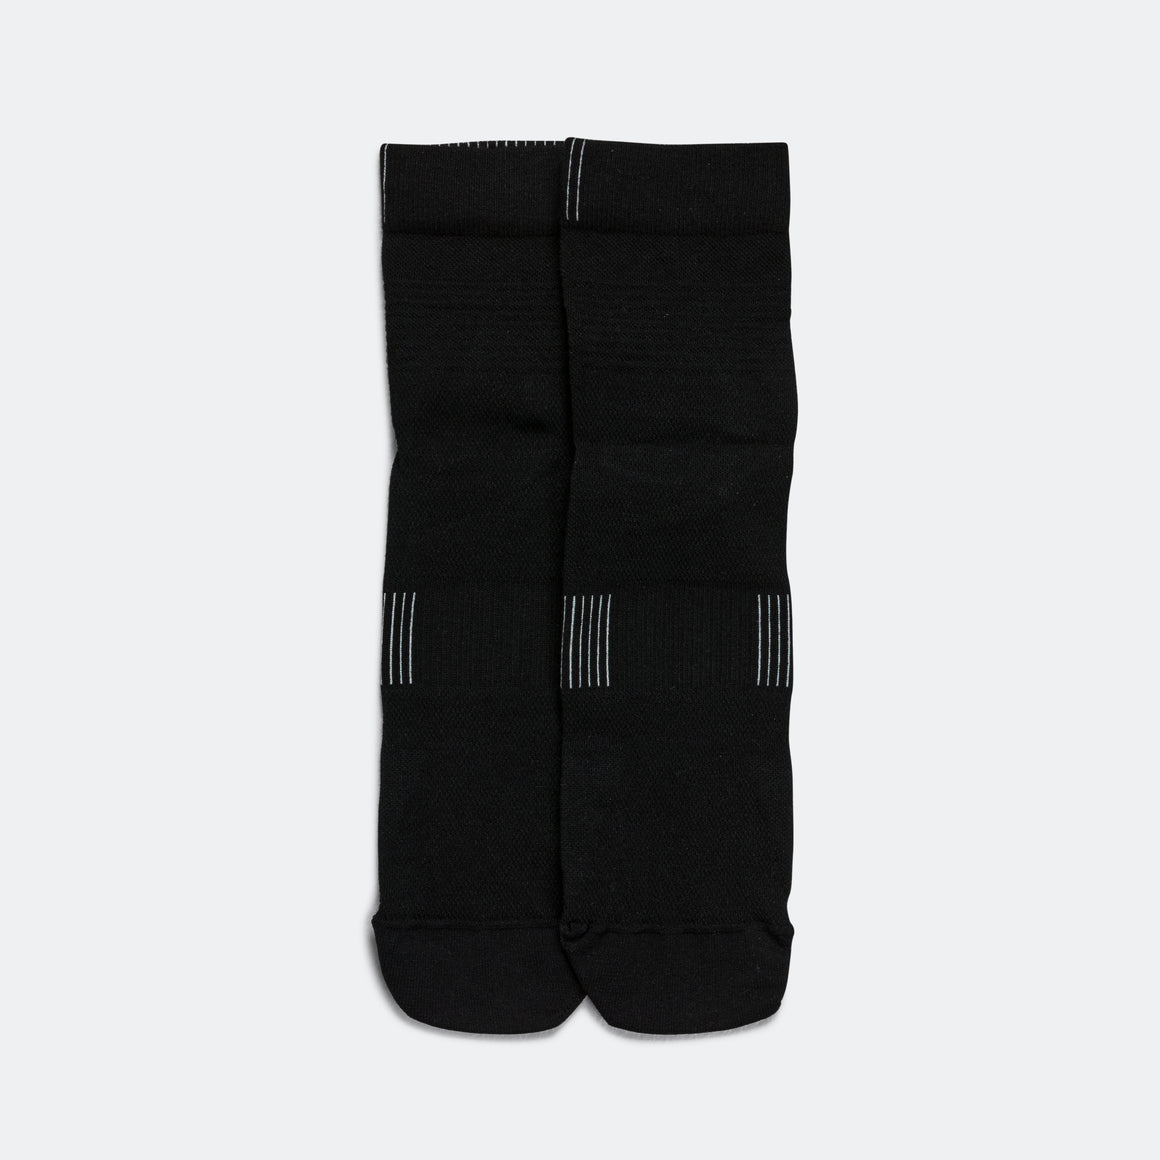 Womens Ultralight Mid Sock - Black/white